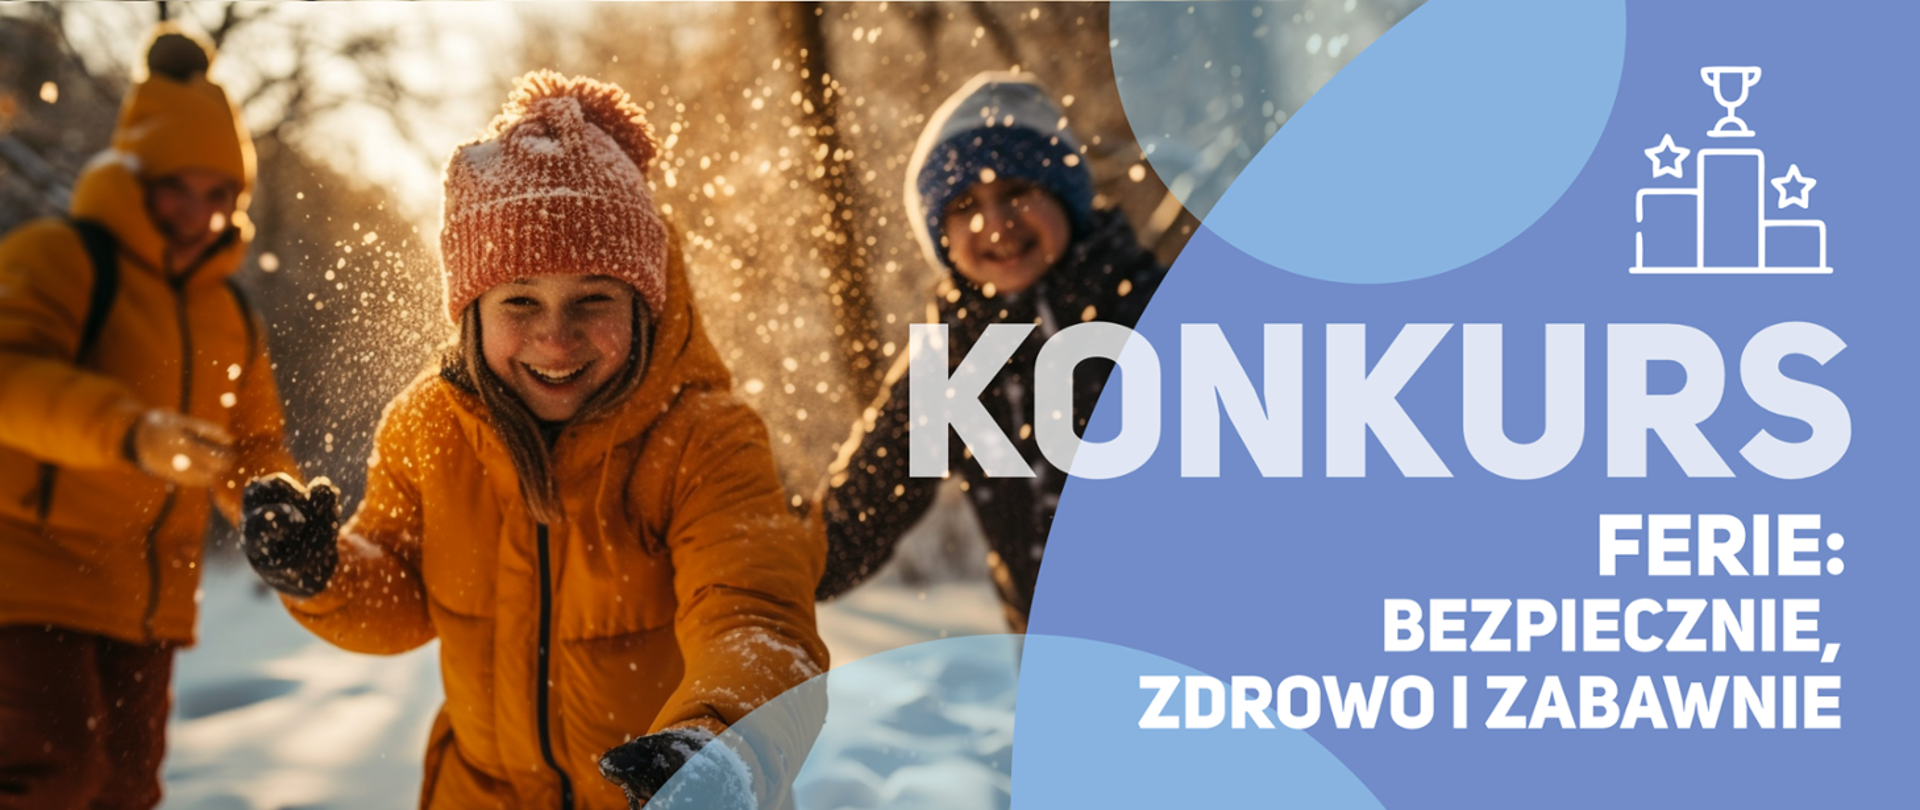 Grafika przedstawiająca zdjęcie grupy dzieci bawiących się śniegiem. Z prawej strony napisy "Konkurs. Ferie: bezpiecznie, zdrowo i zabawnie"